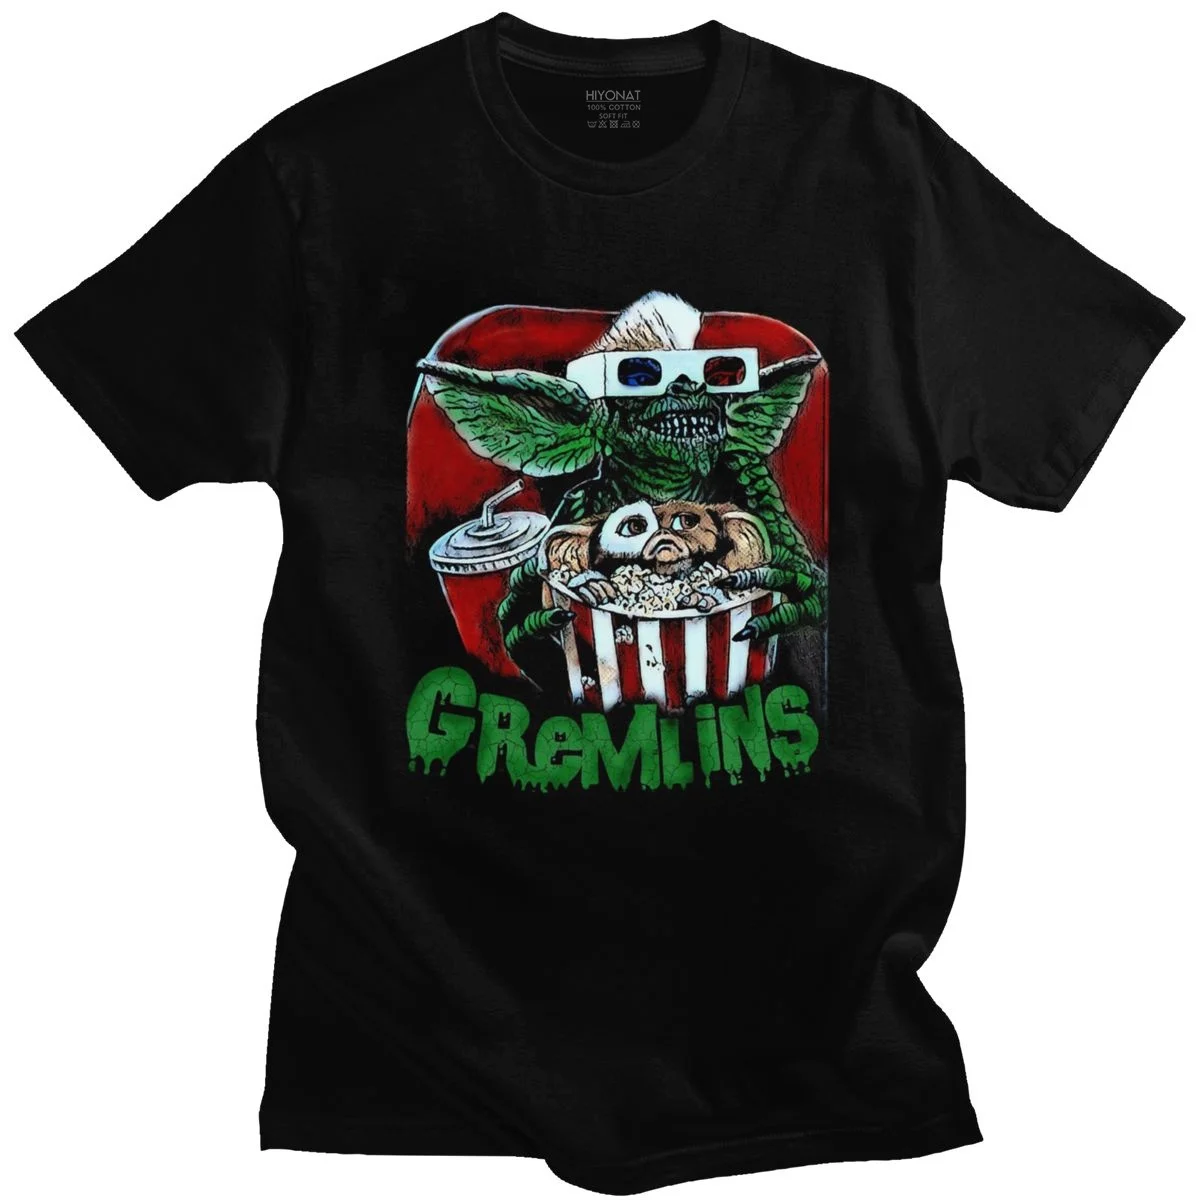 

Футболка мужская с надписью «grmlins», хлопковая рубашка с коротким рукавом, в стиле 80-х фильмов, монстр могвай, ужас, ретро, научная фантастика, ...